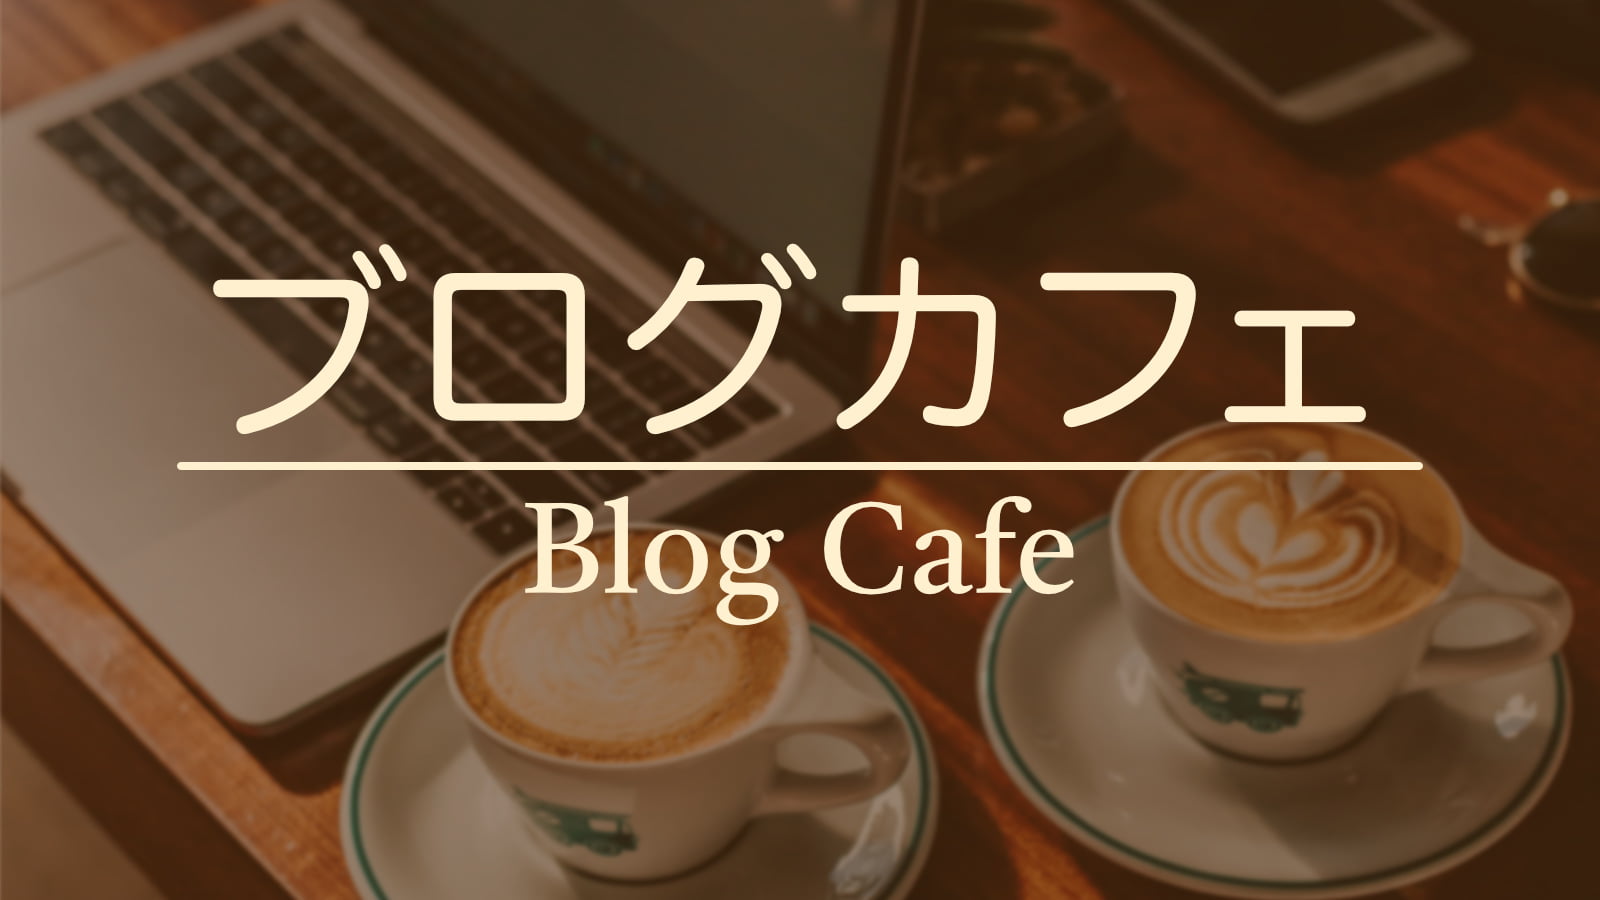 ブログカフェ Blog Cafe Webサイトイメージ